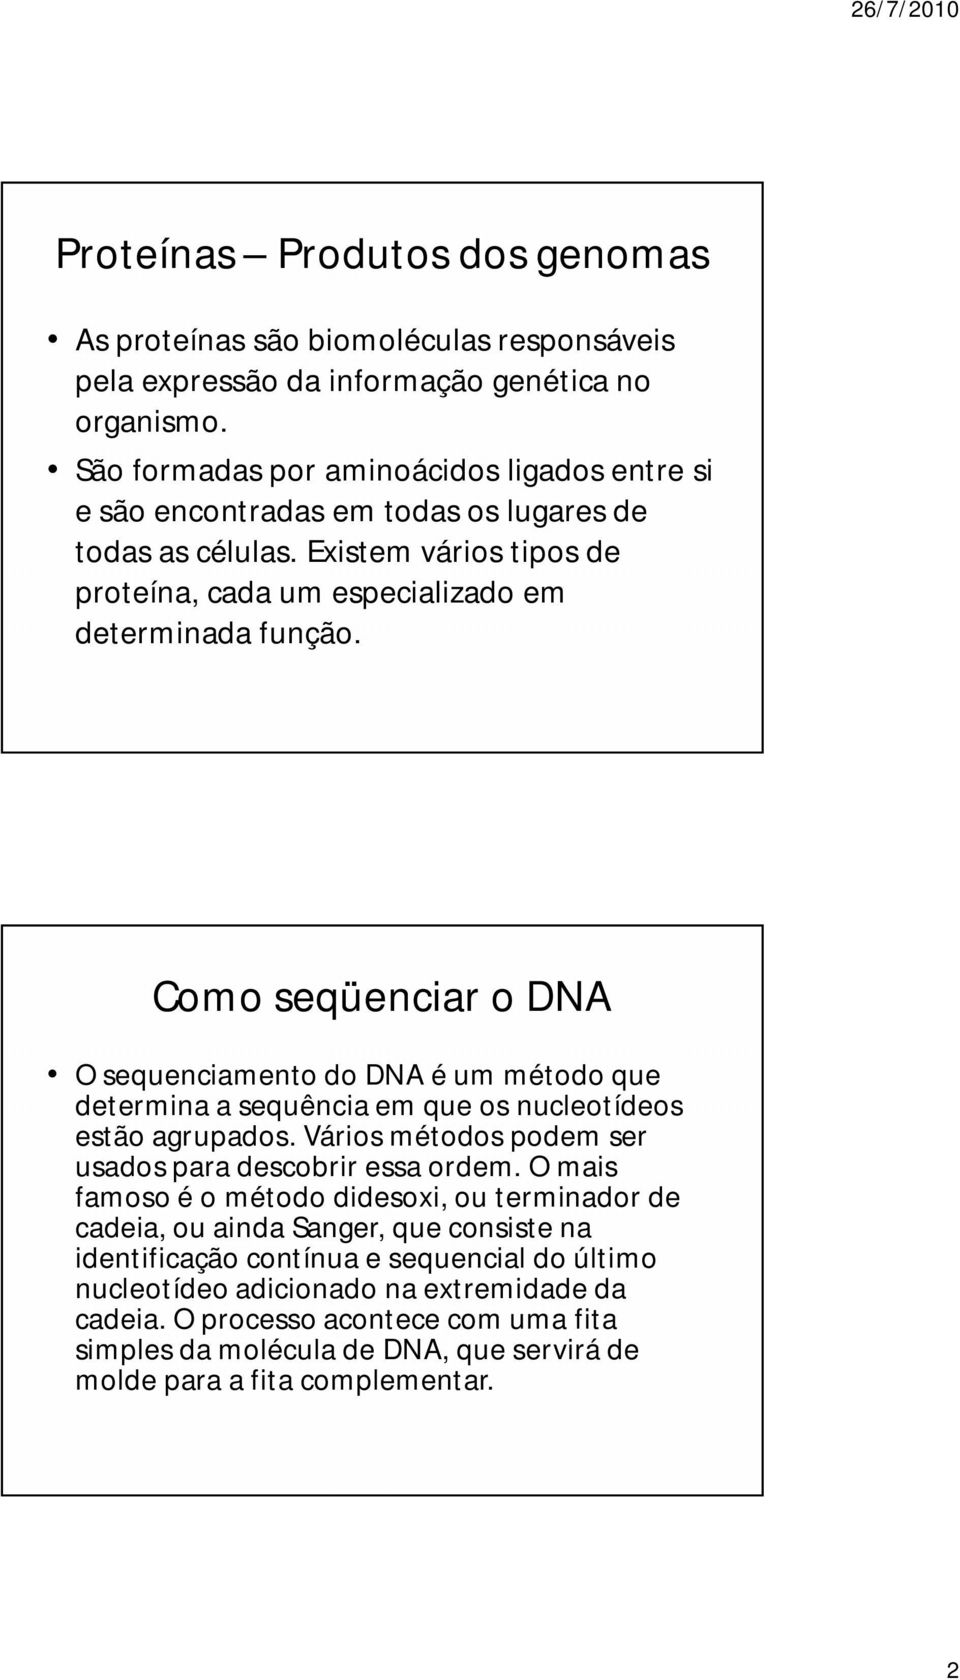 Como seqüenciar o DNA O sequenciamento do DNA é um método que determina a sequência em que os nucleotídeos estão agrupados. Vários métodos podem ser usados para descobrir essa ordem.